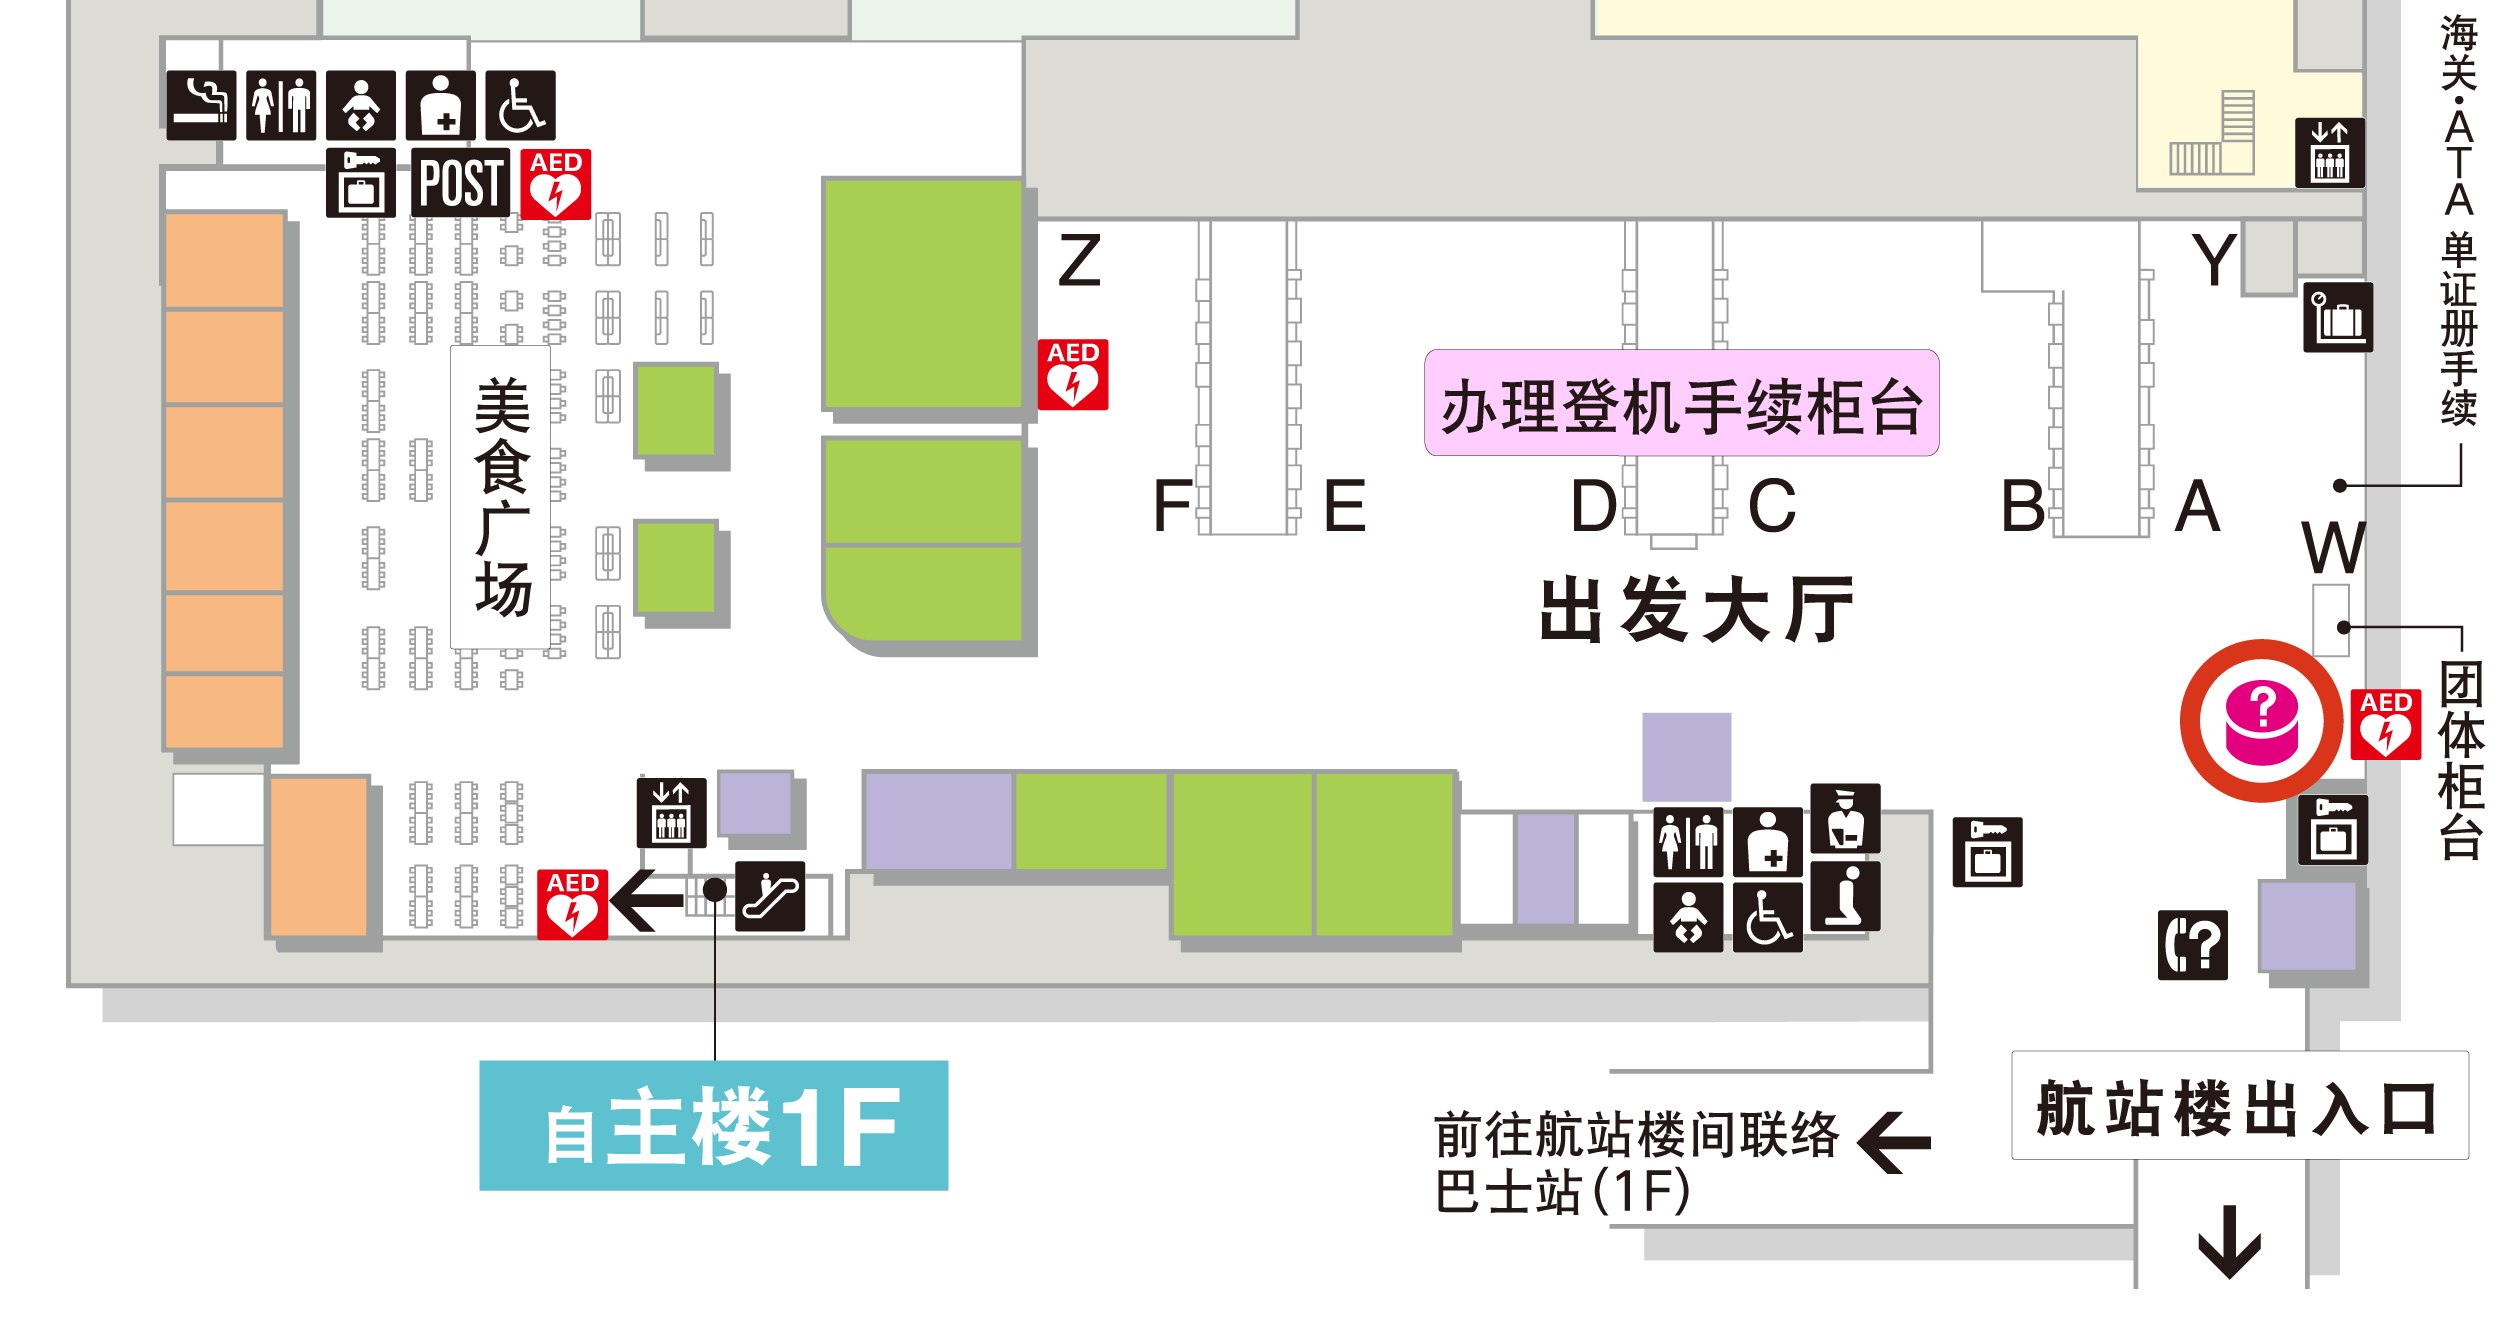 第3航站楼 2楼 出发大厅、到达大厅 楼层地图图示